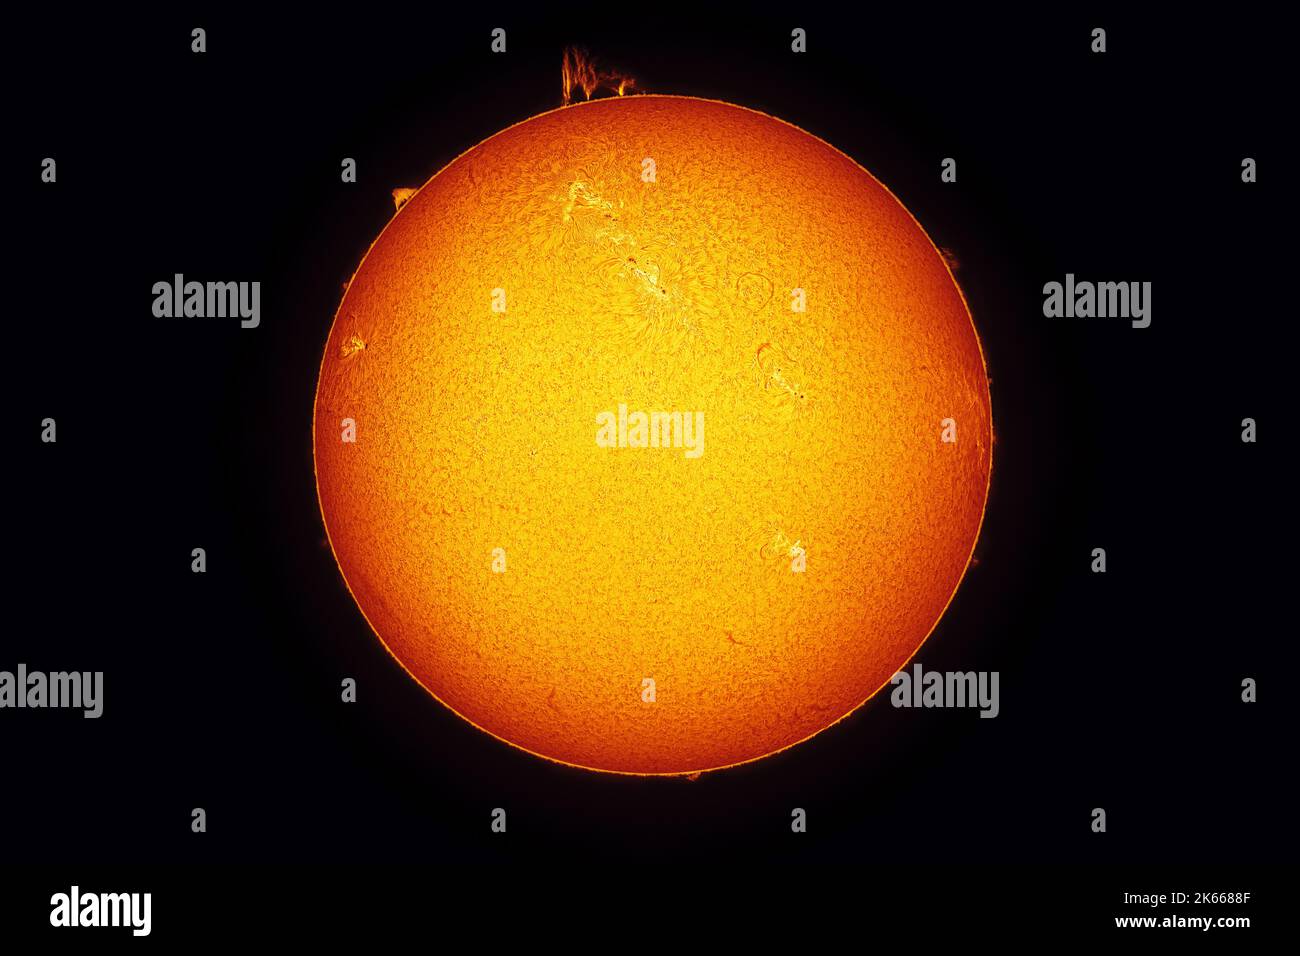 Helle Sonne gegen dunklen Sternenhimmel im Sonnensystem, mit sichtbaren Prominenzen, Fasern, Würzen, Plage, Flecken und Chromosphäre. Amateur-Bild in H-al Stockfoto